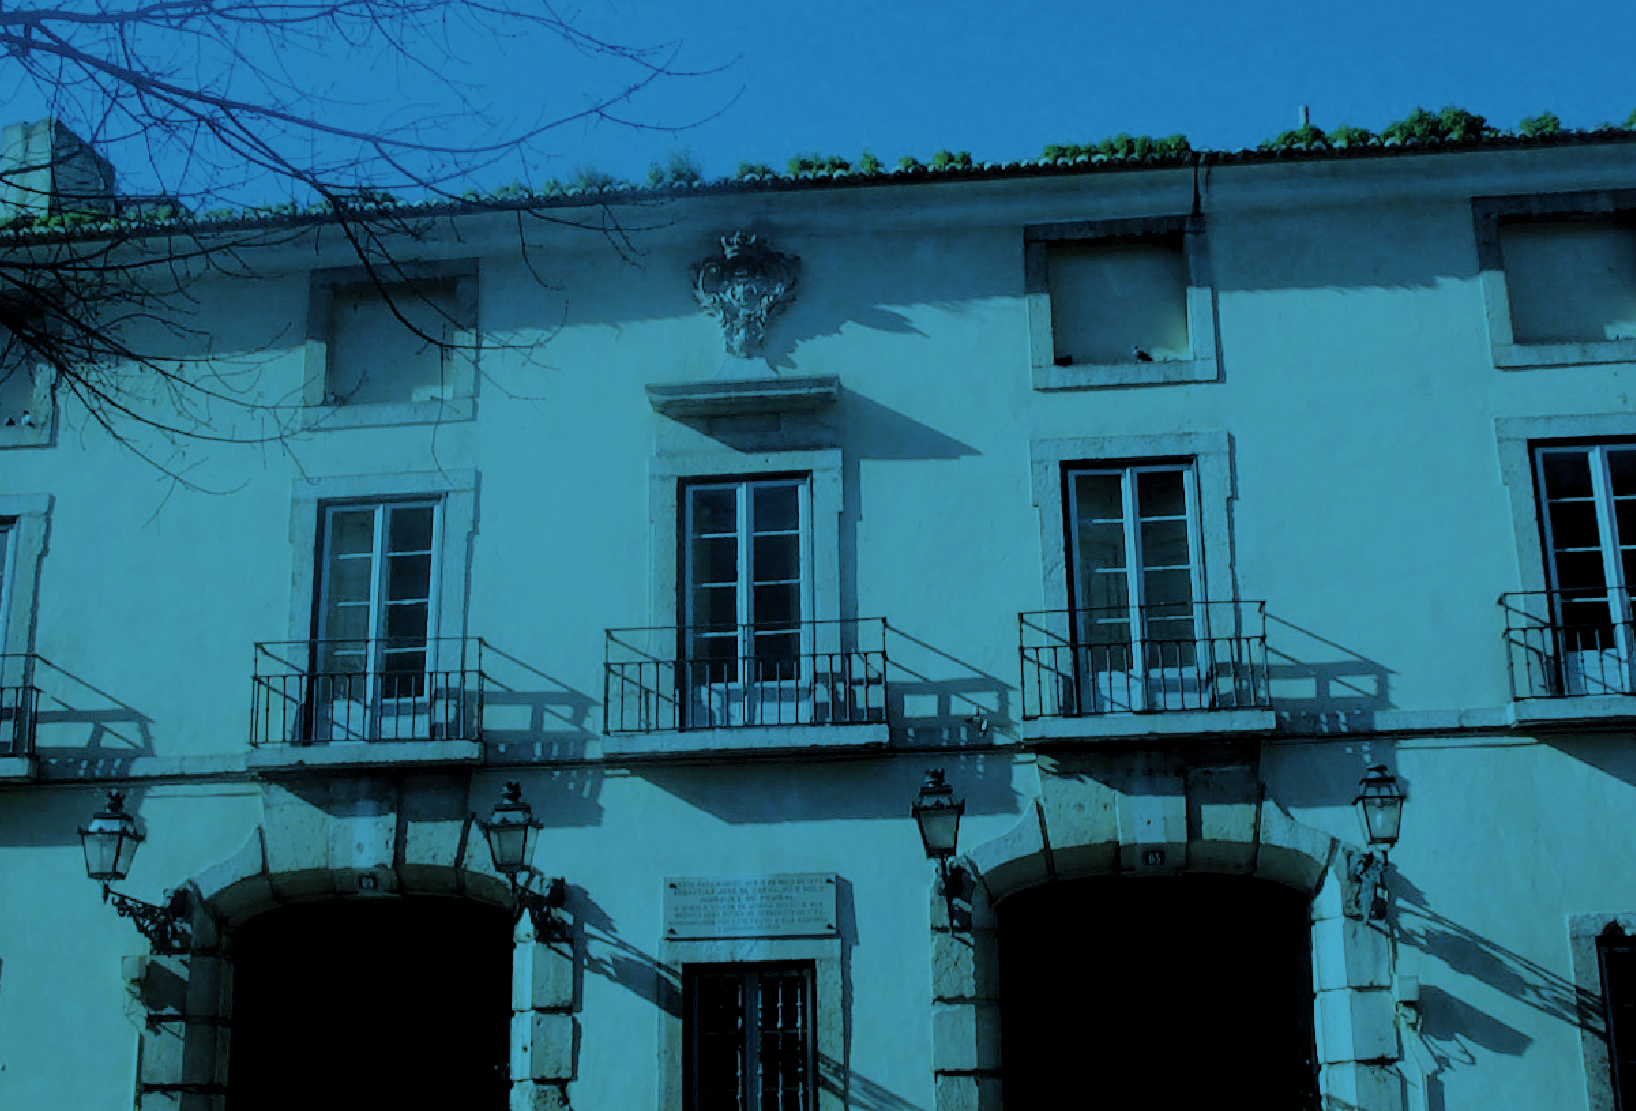 Anúncio público de Venda de imóveis, propriedade do Instituto Politécnico de Lisboa